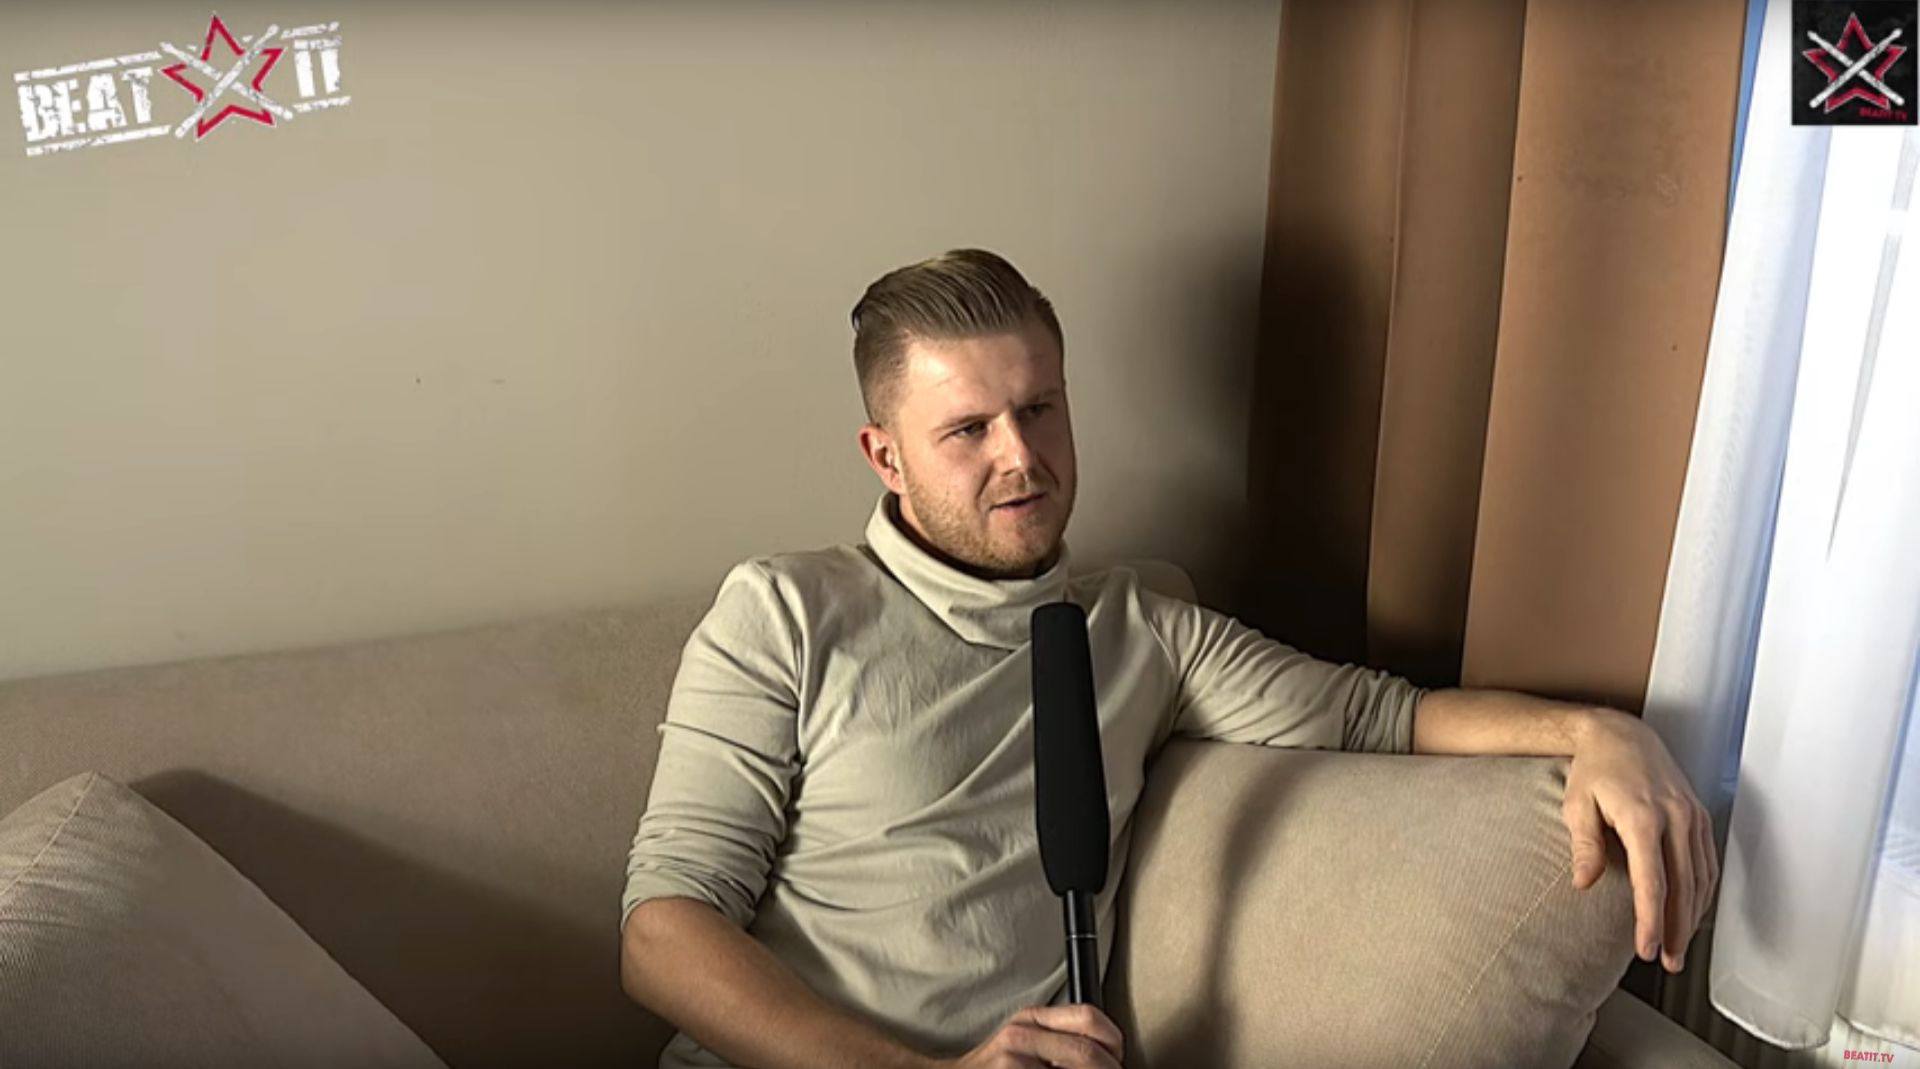 Maciej Pilarz perkusista zespołu Kamila Bednarka wywiad dla beatit.tv